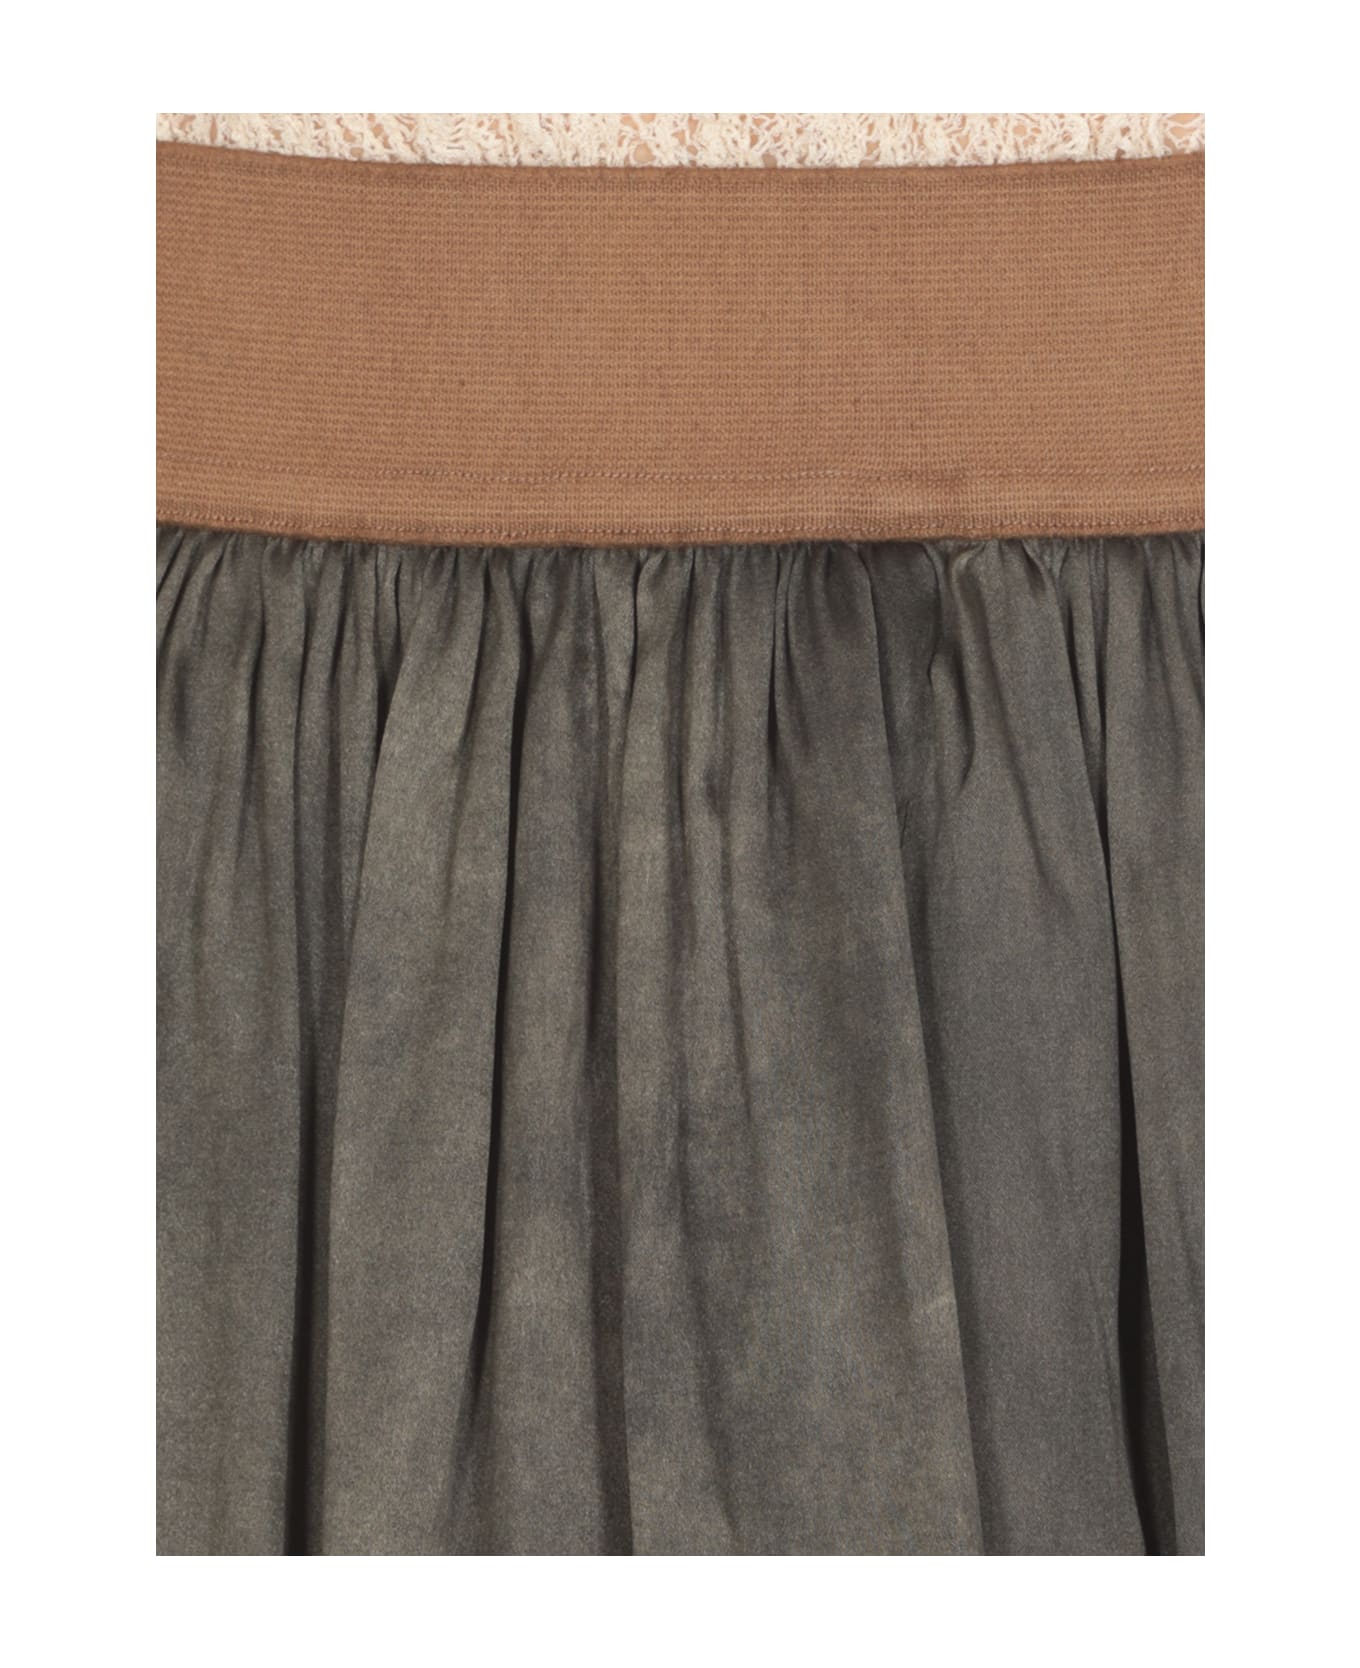 Uma Wang Gillian Skirt - Grey スカート